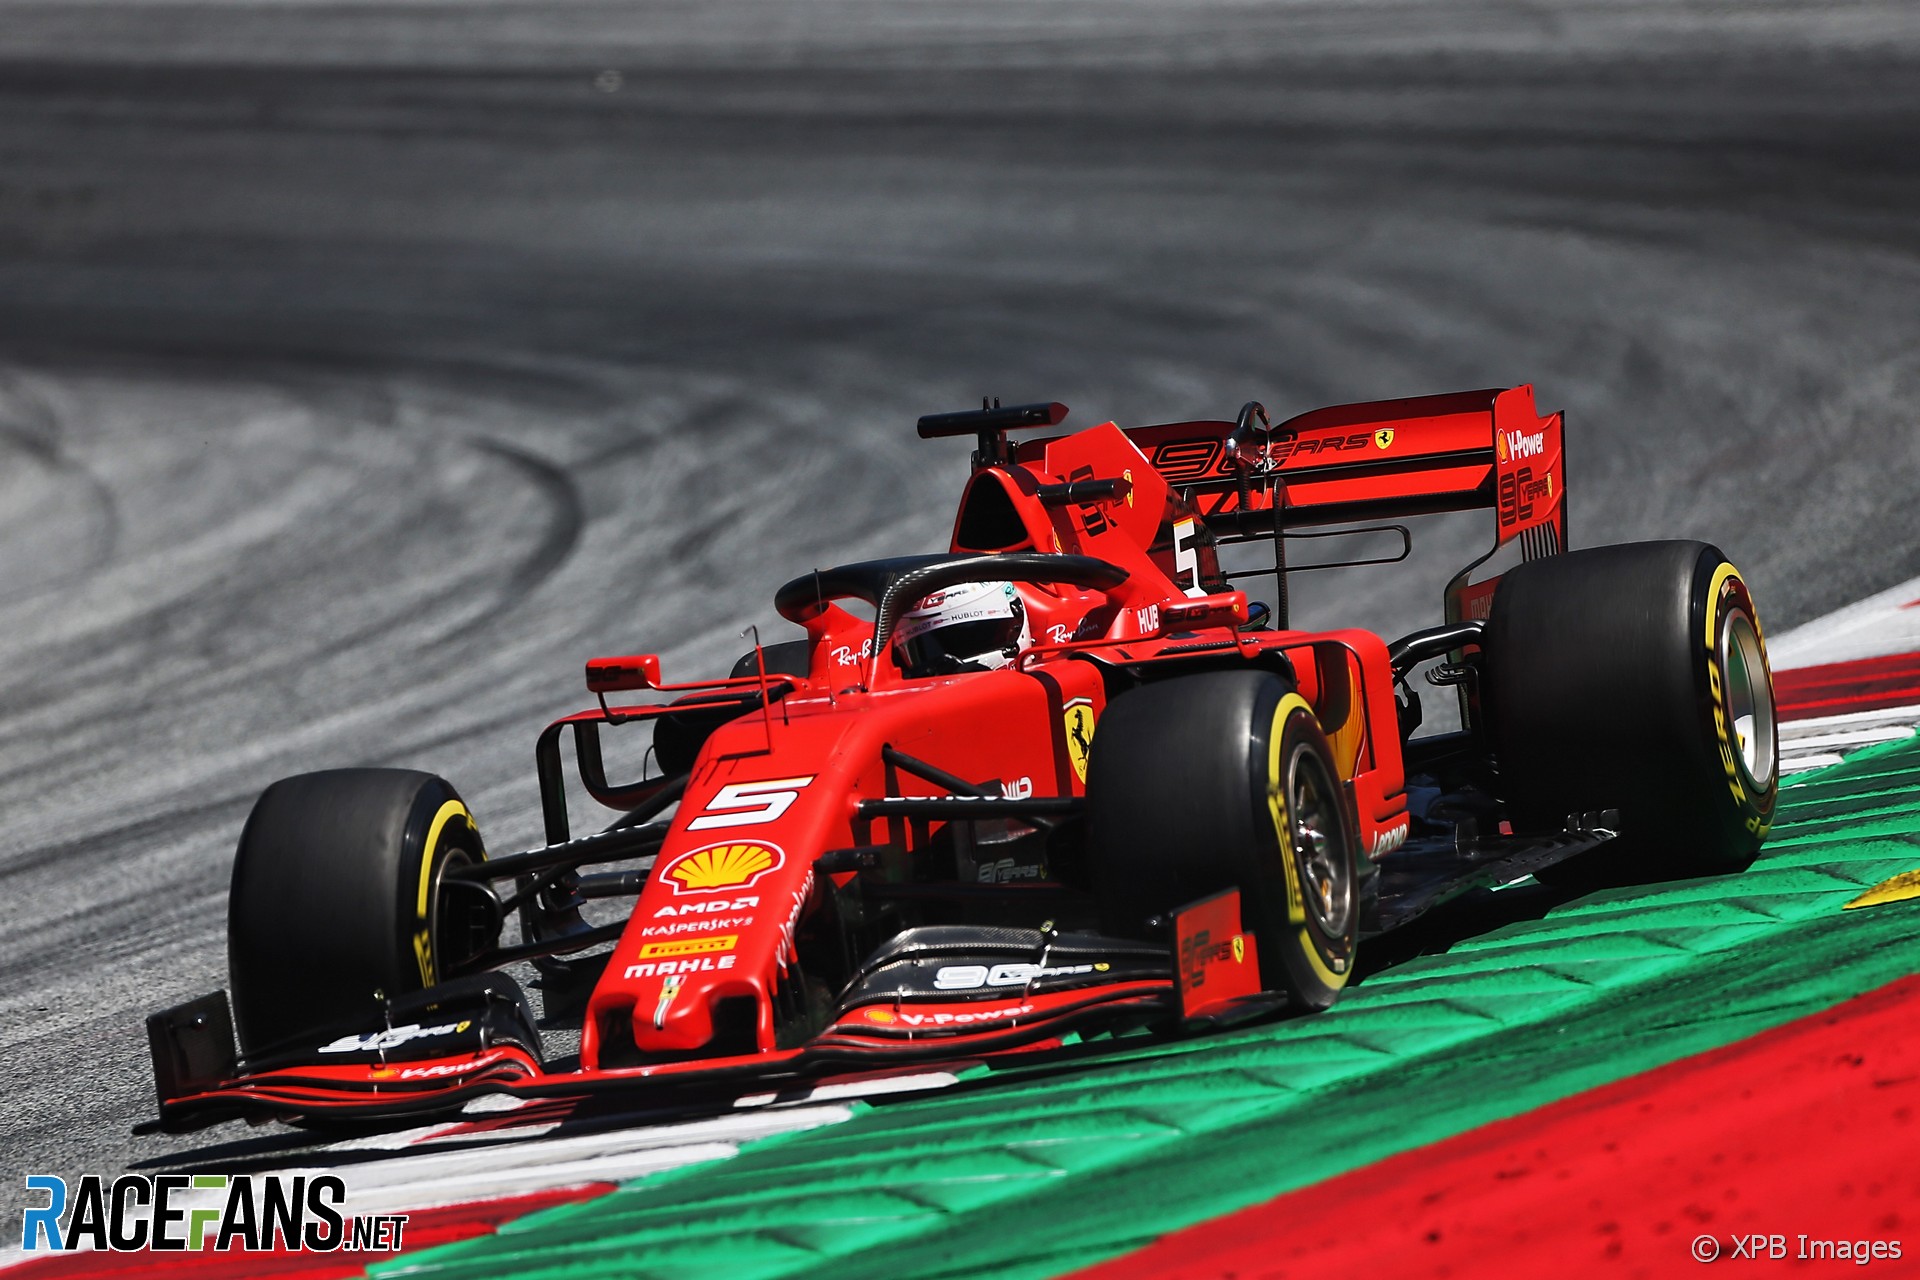 Sebastian Vettel, Ferrari, Red Bull Ring, 2019